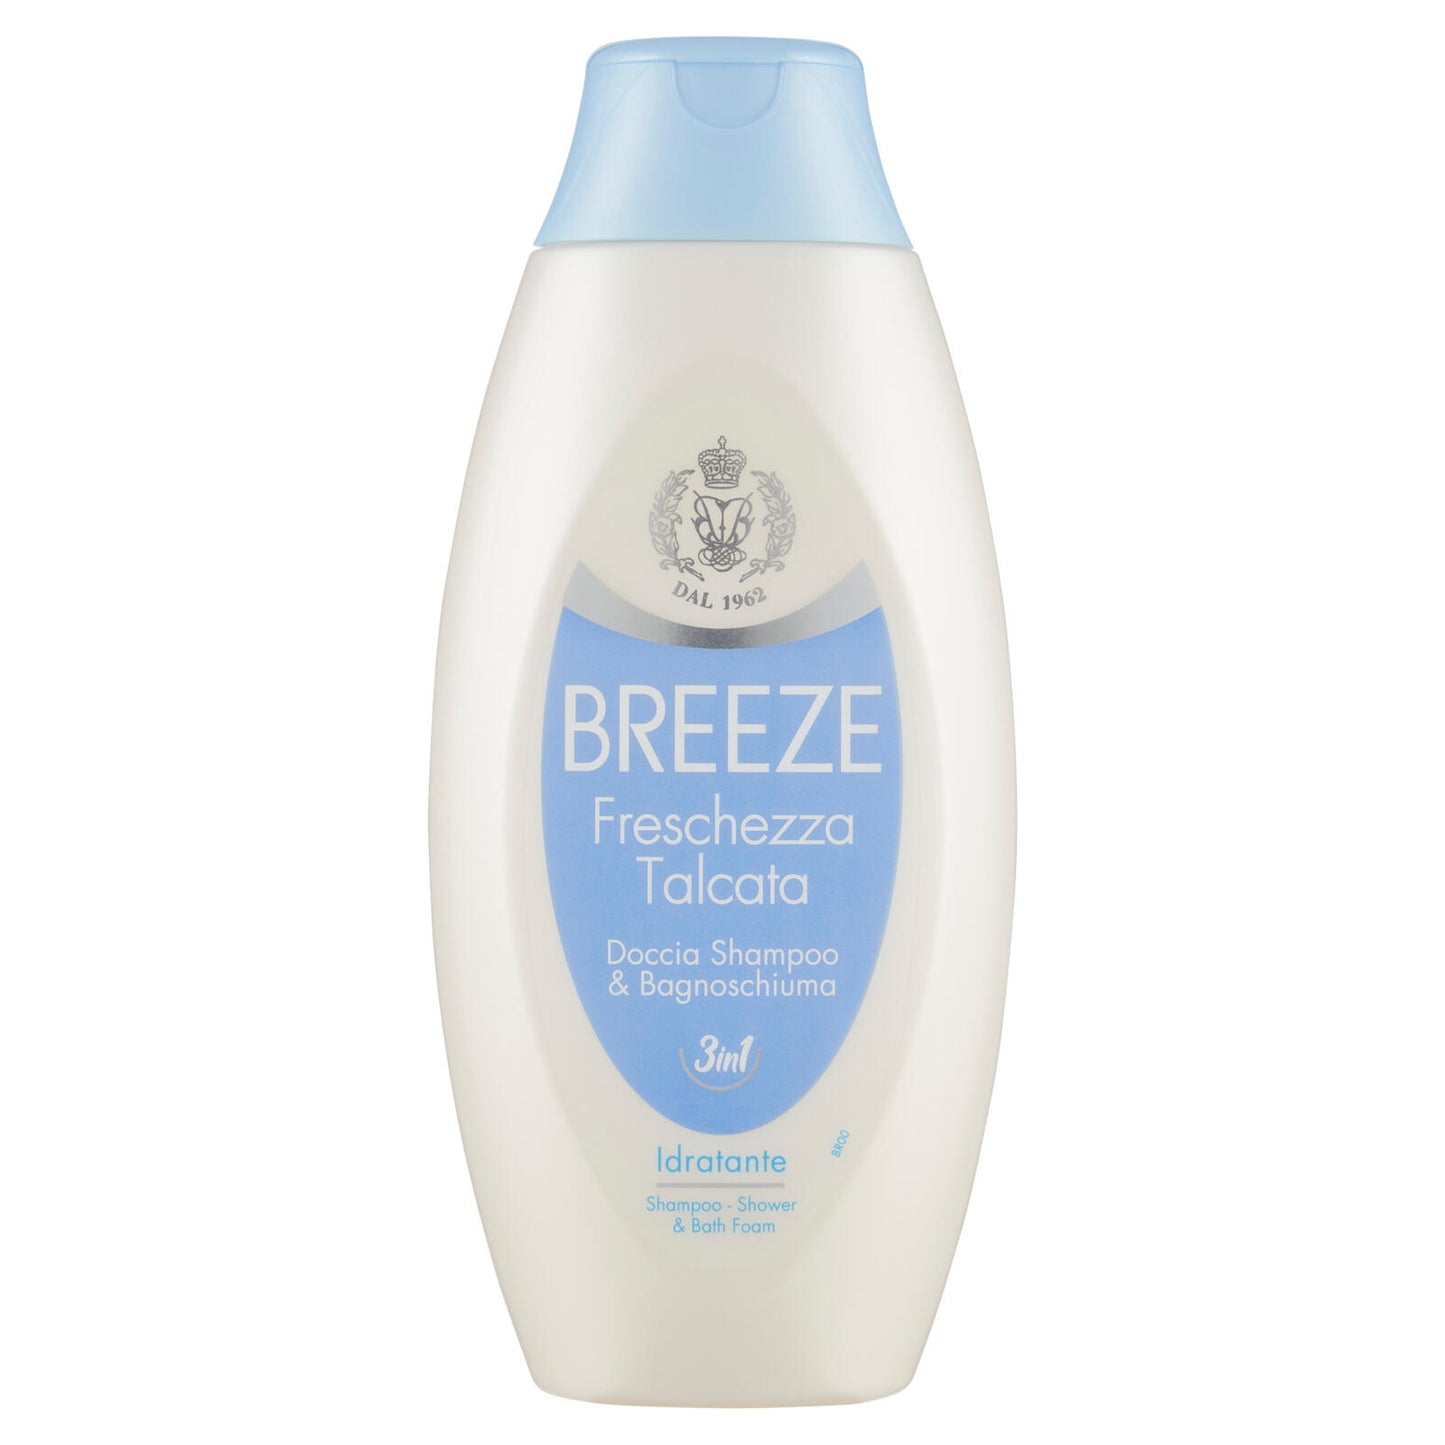 Breeze Freschezza Talcata Doccia Shampoo & Bagnoschiuma 3in1 Idratante 400 mL